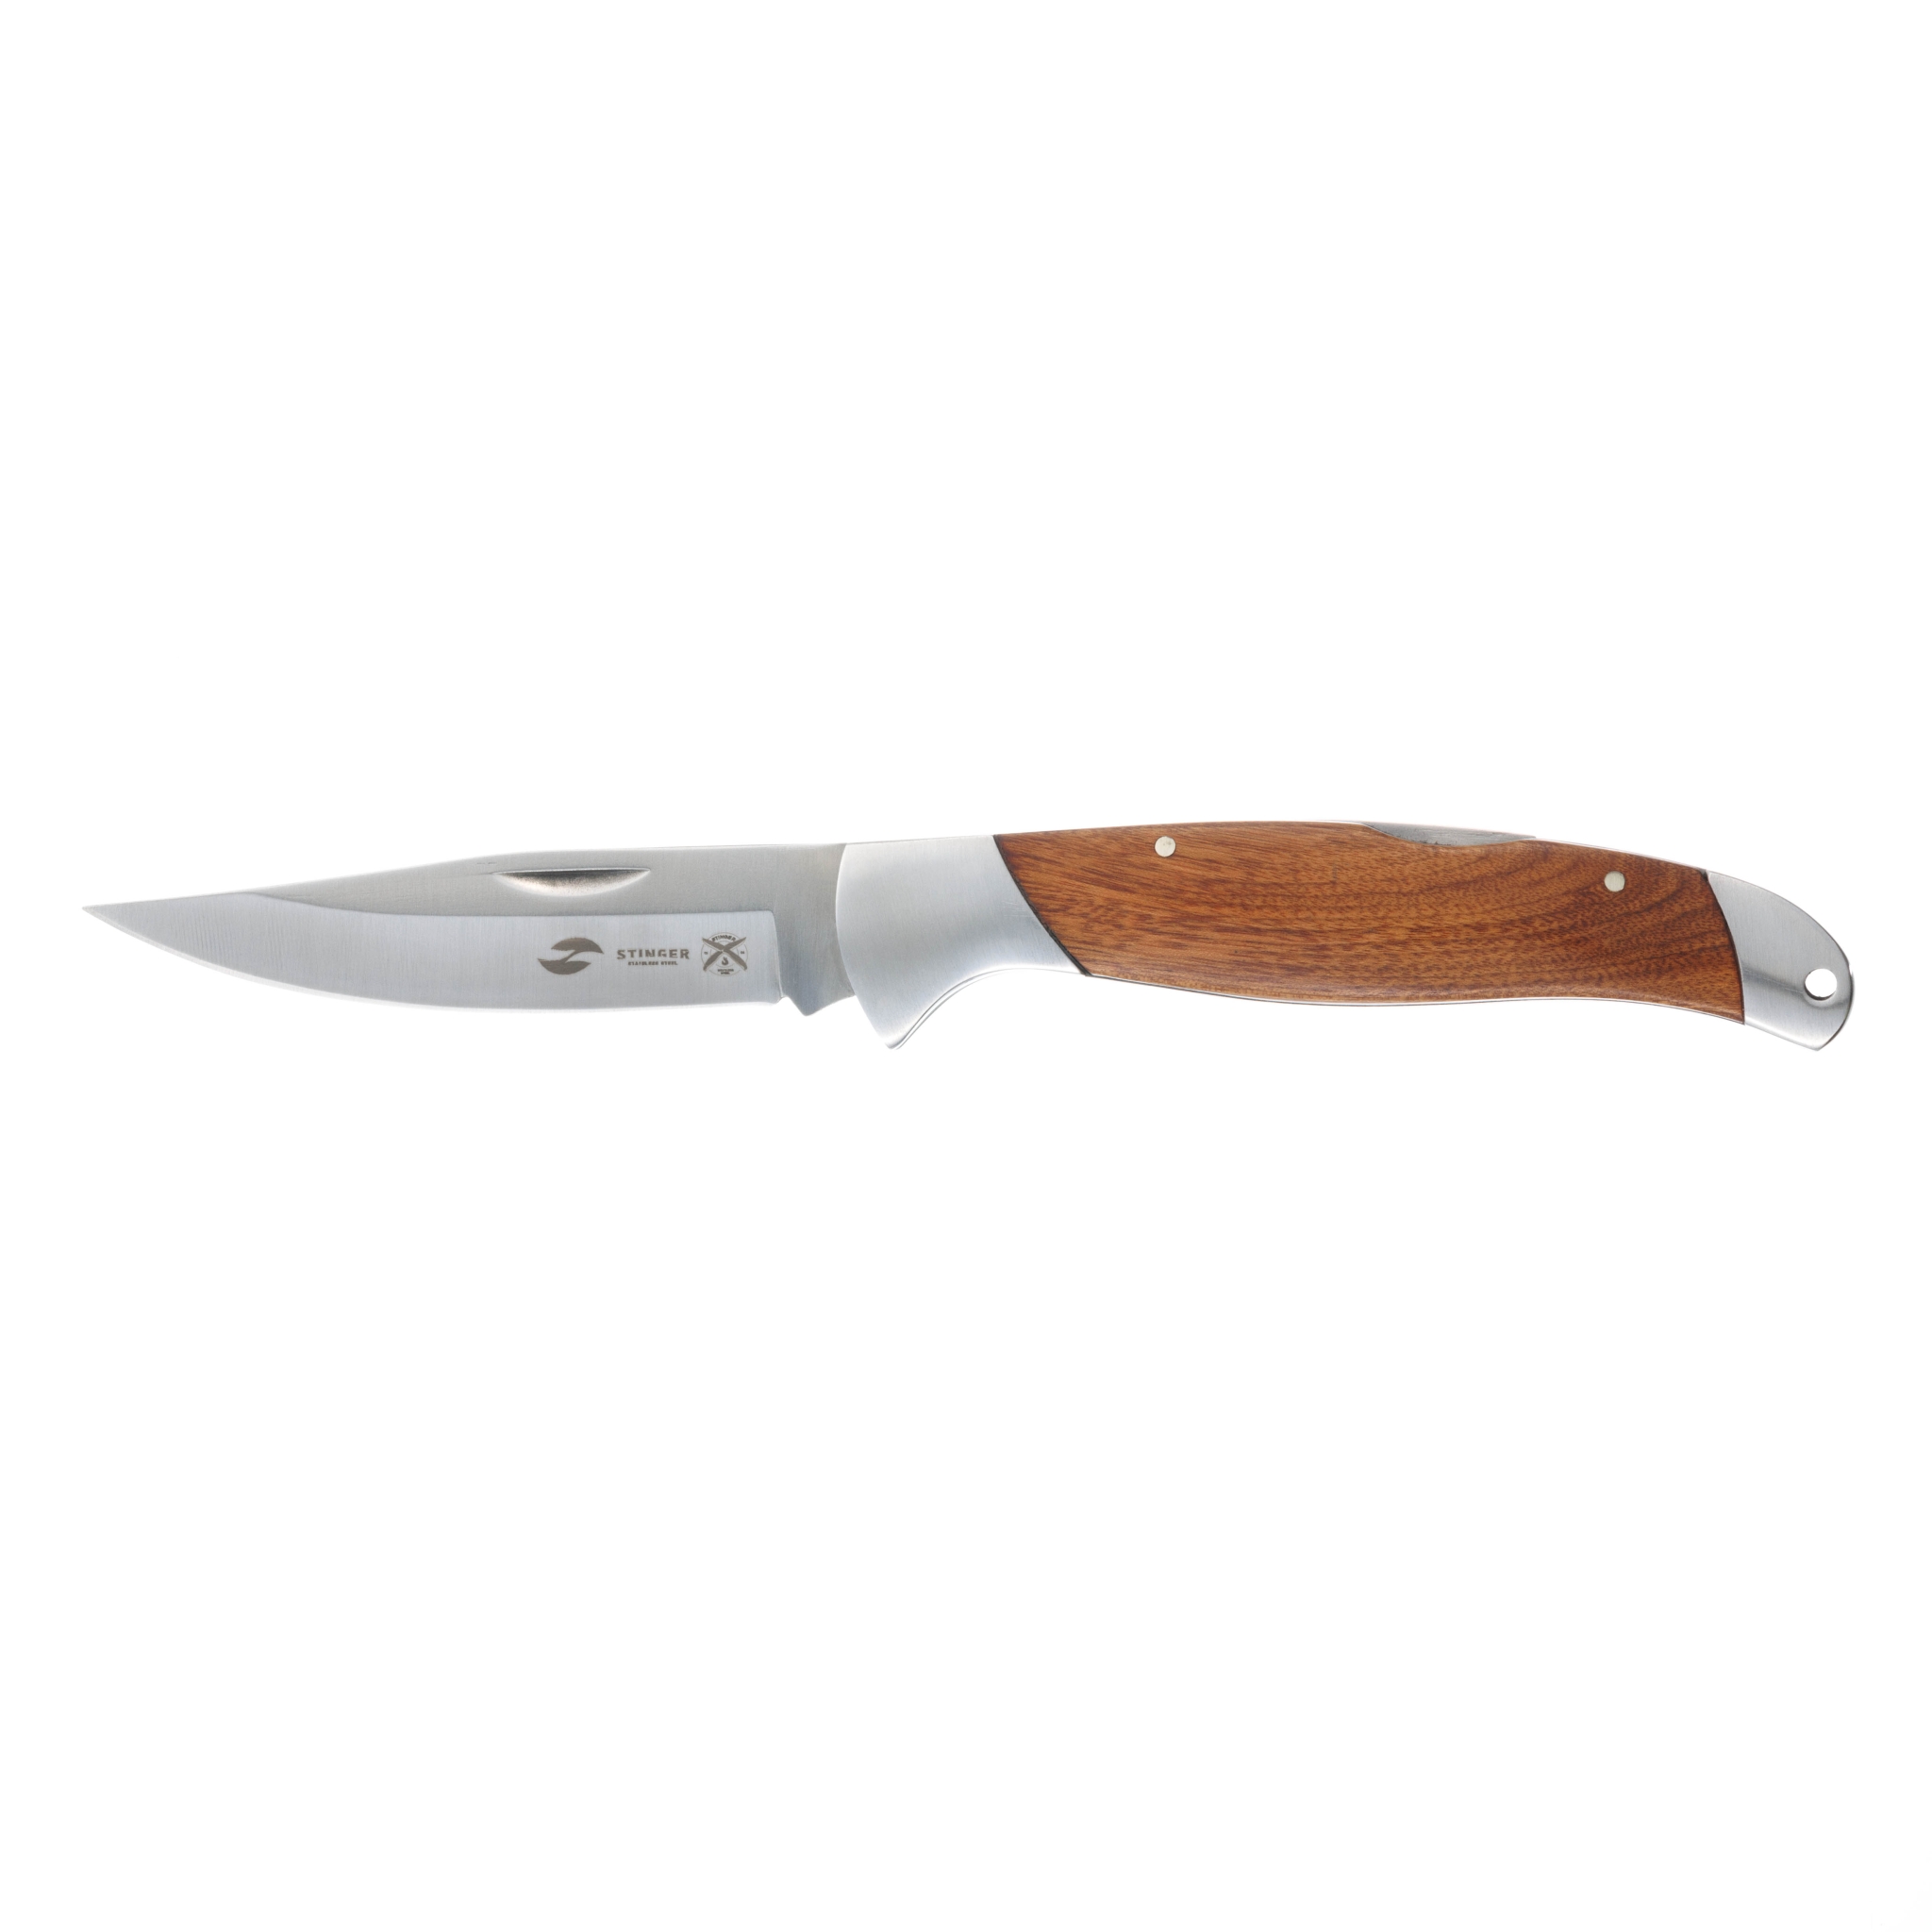 Нож складной Stinger, 100 мм (серебристый), материал рукояти: нержавеющая сталь, розовое дерево, коричневый, нержавеющая сталь, нержавеющая сталь, палисандровое дерево